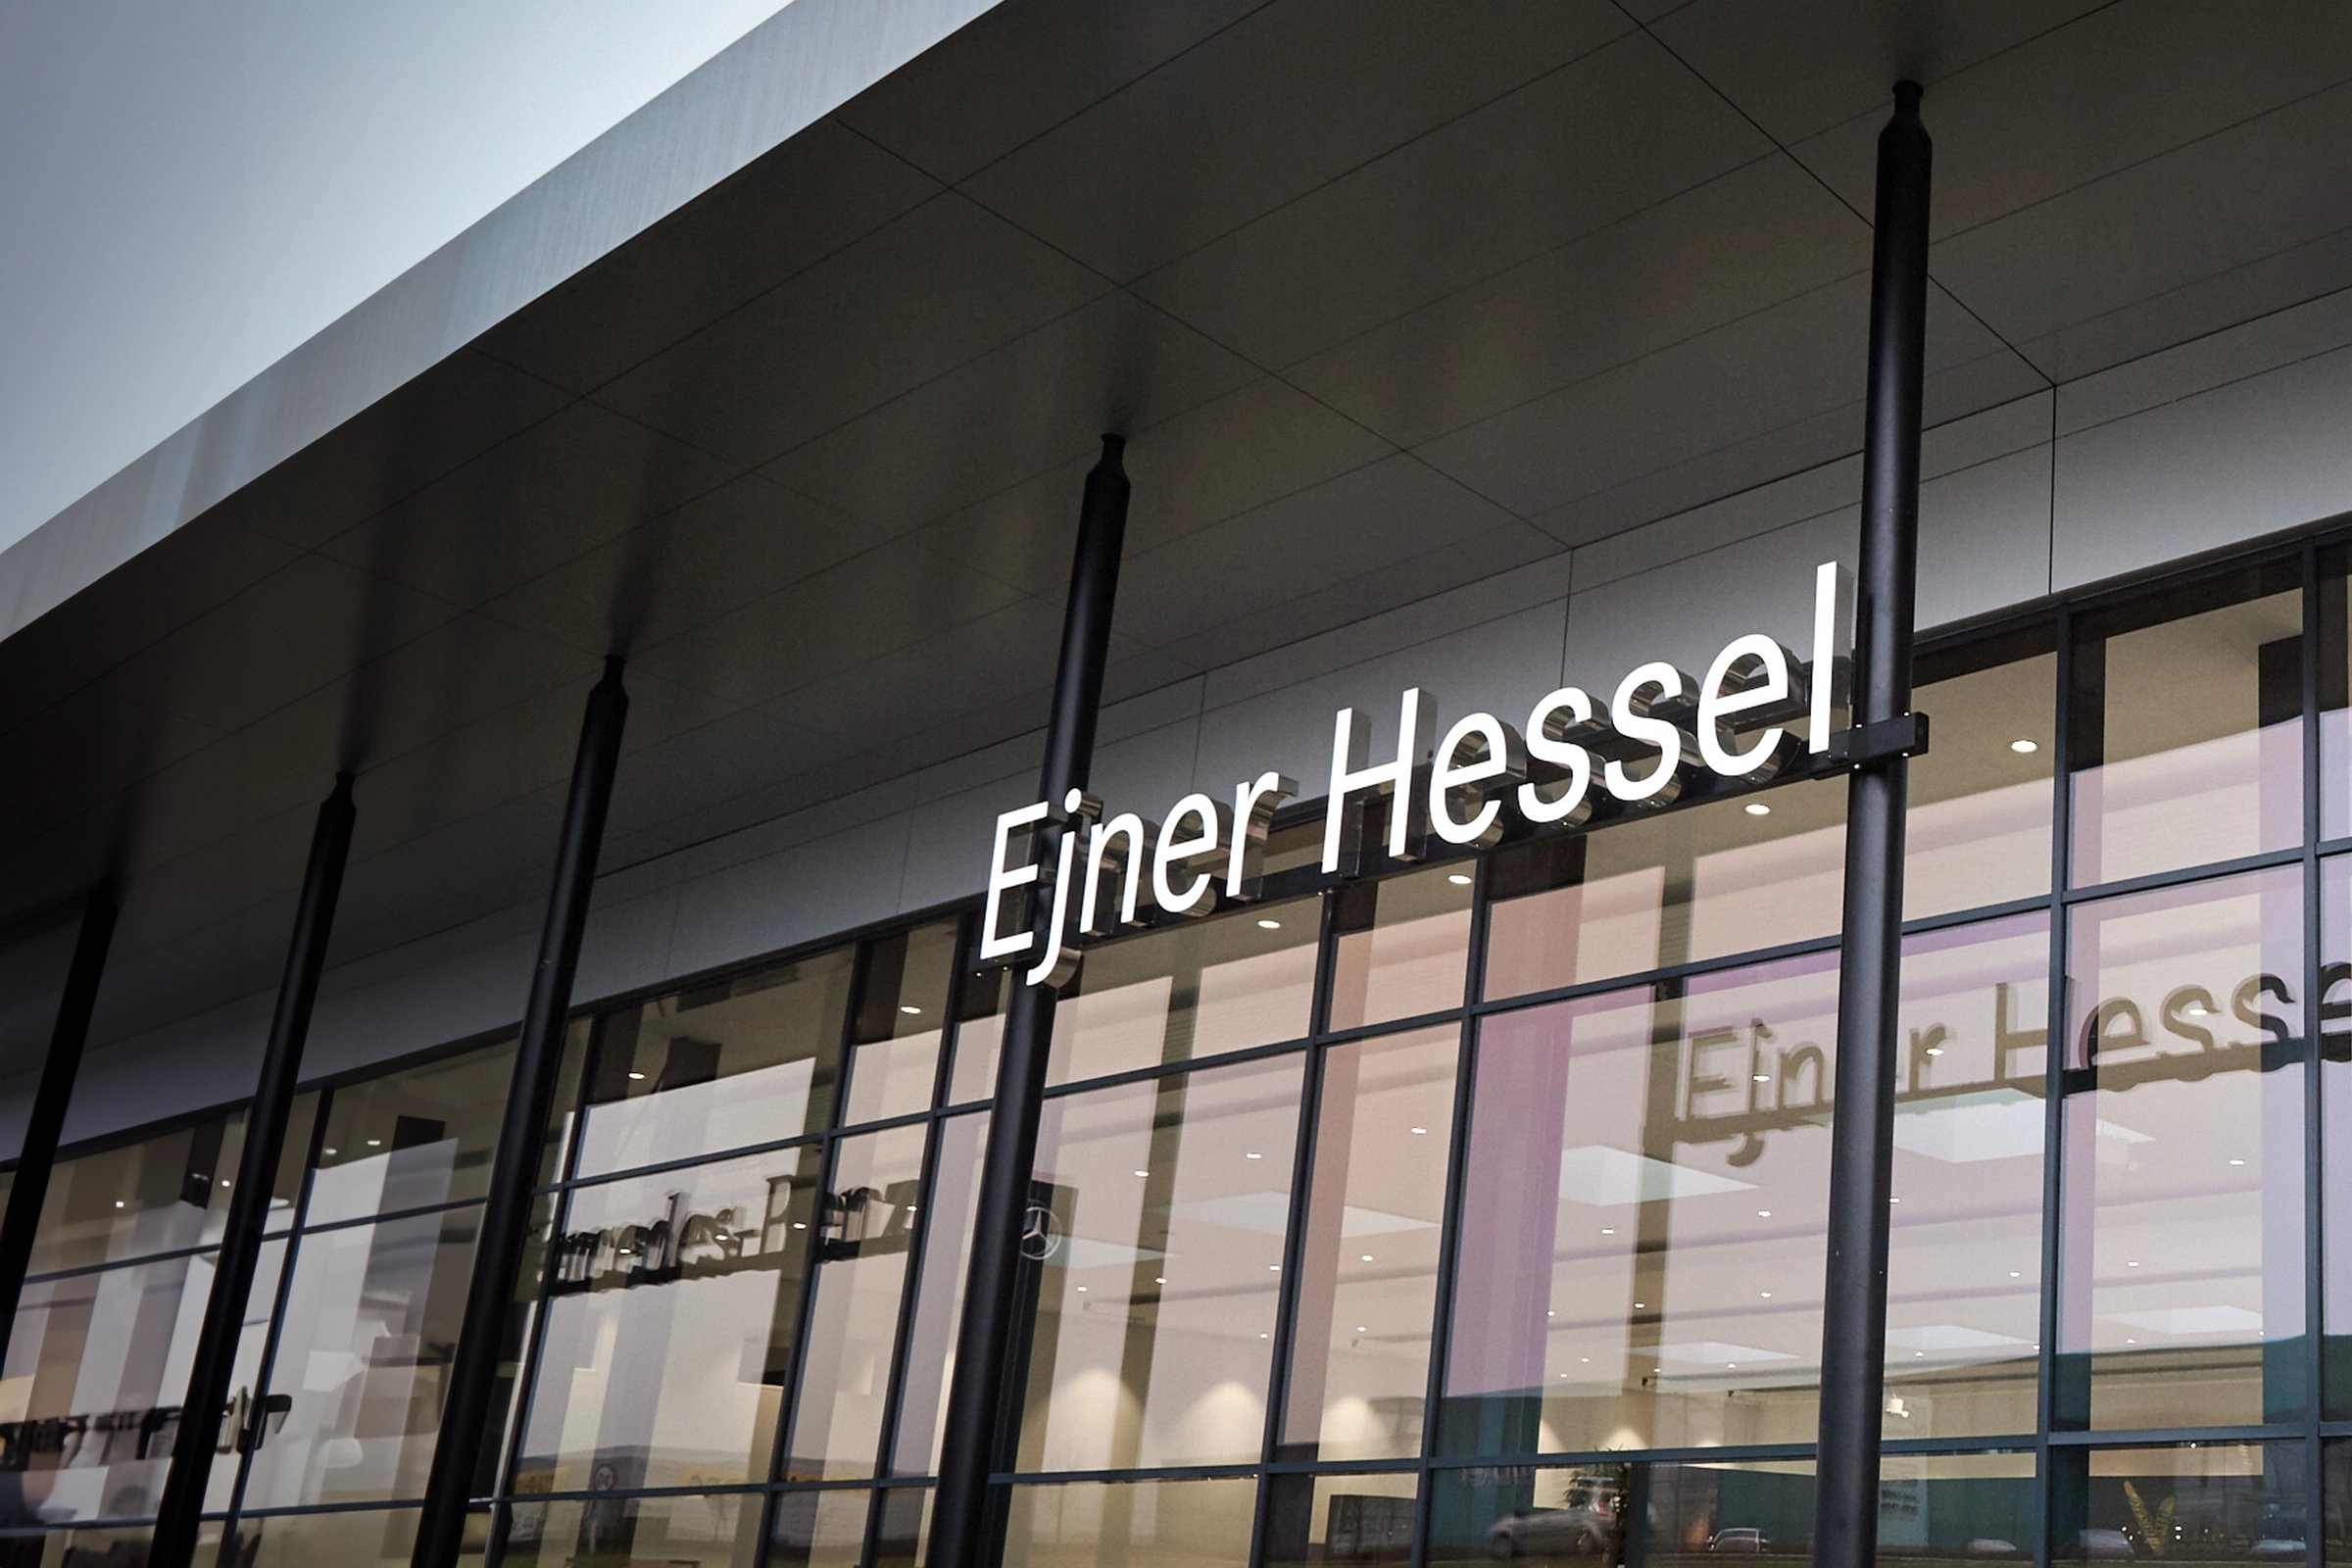 ejner-hessel-facade-logo.jpg